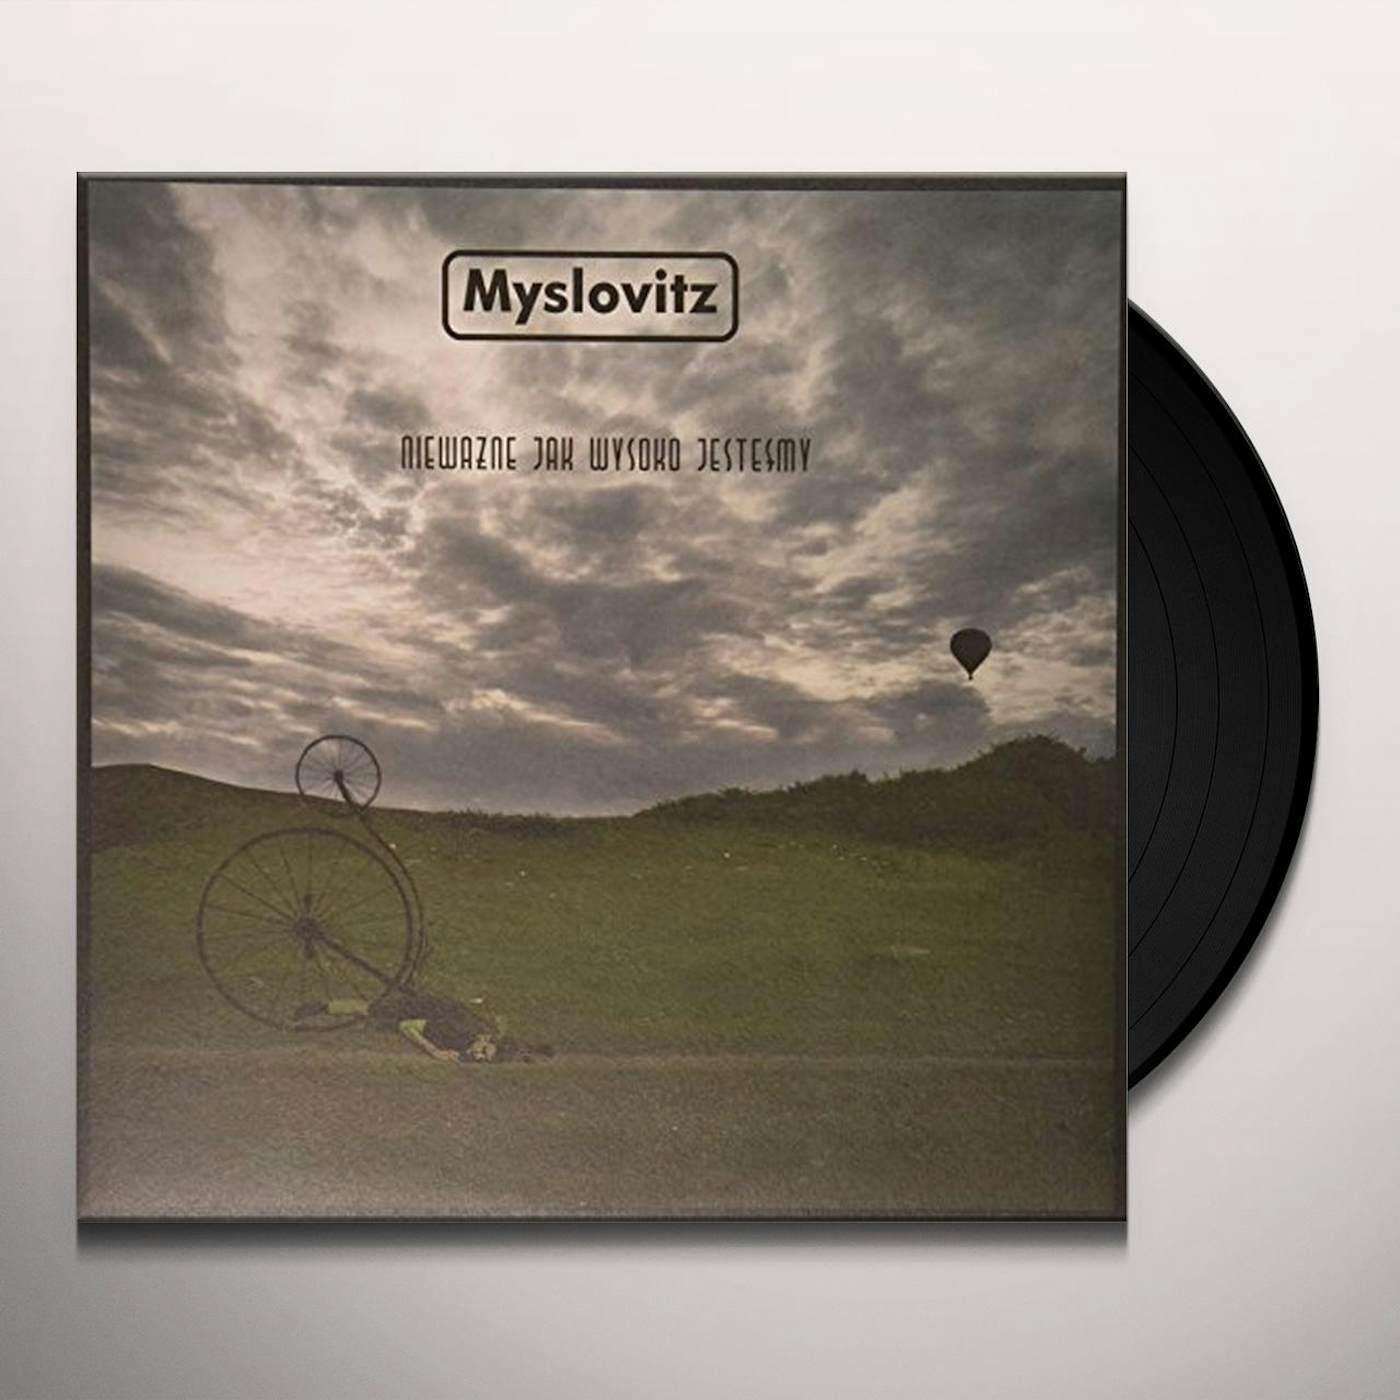 Myslovitz NIEWAZNE JAK WYSOKO JESTESMY Vinyl Record